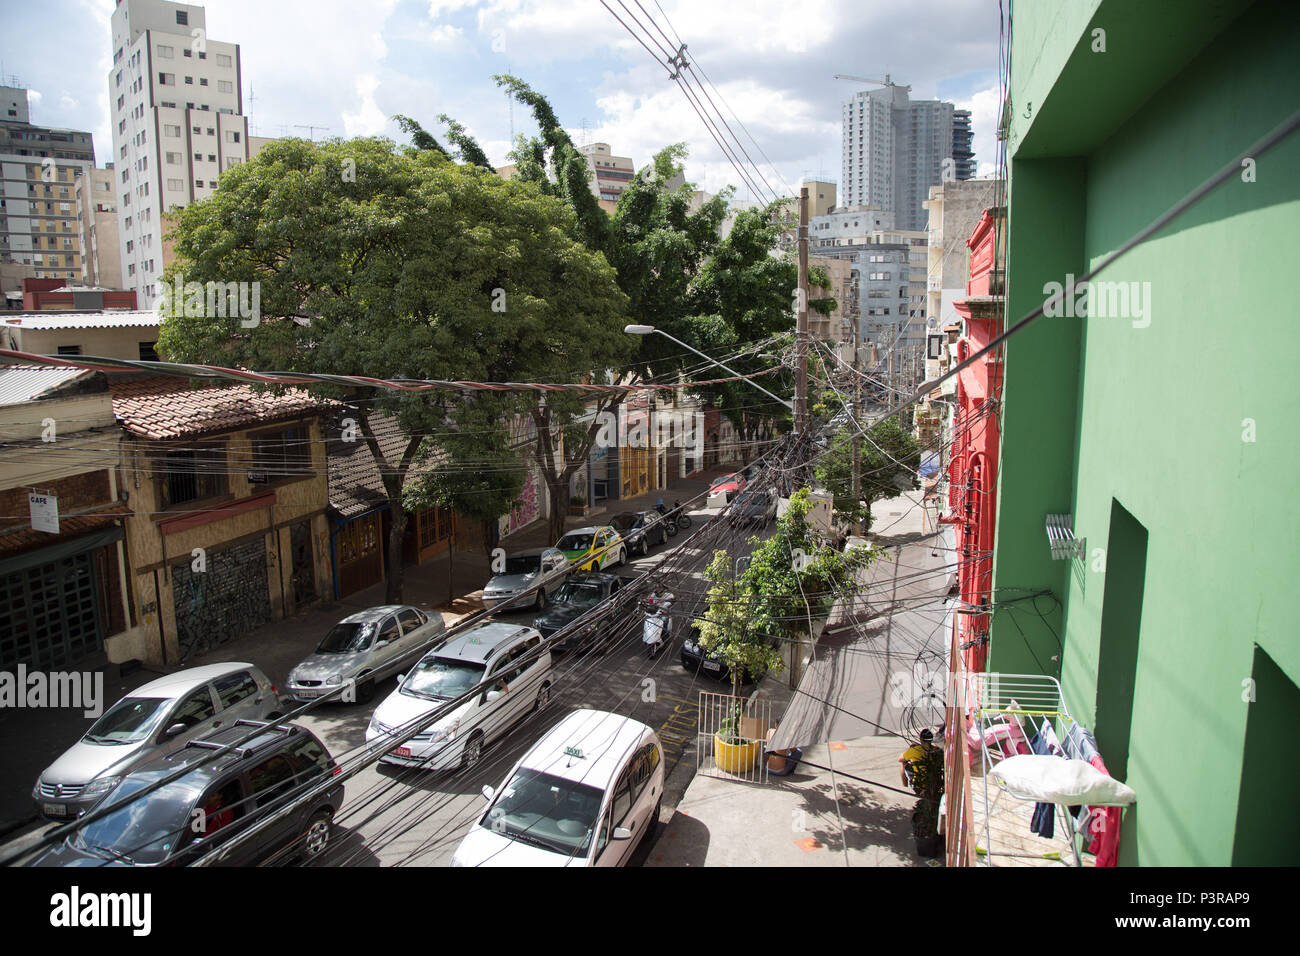 SÃO PAULO, SP - 24.02.2015: ILUMINAÇÃO PÚBLICA - Emaranhado de fios e cabos em postes de iluminação pública em São Paulo. (Foto: Luis Blanco / Fotoarena) Stock Photo